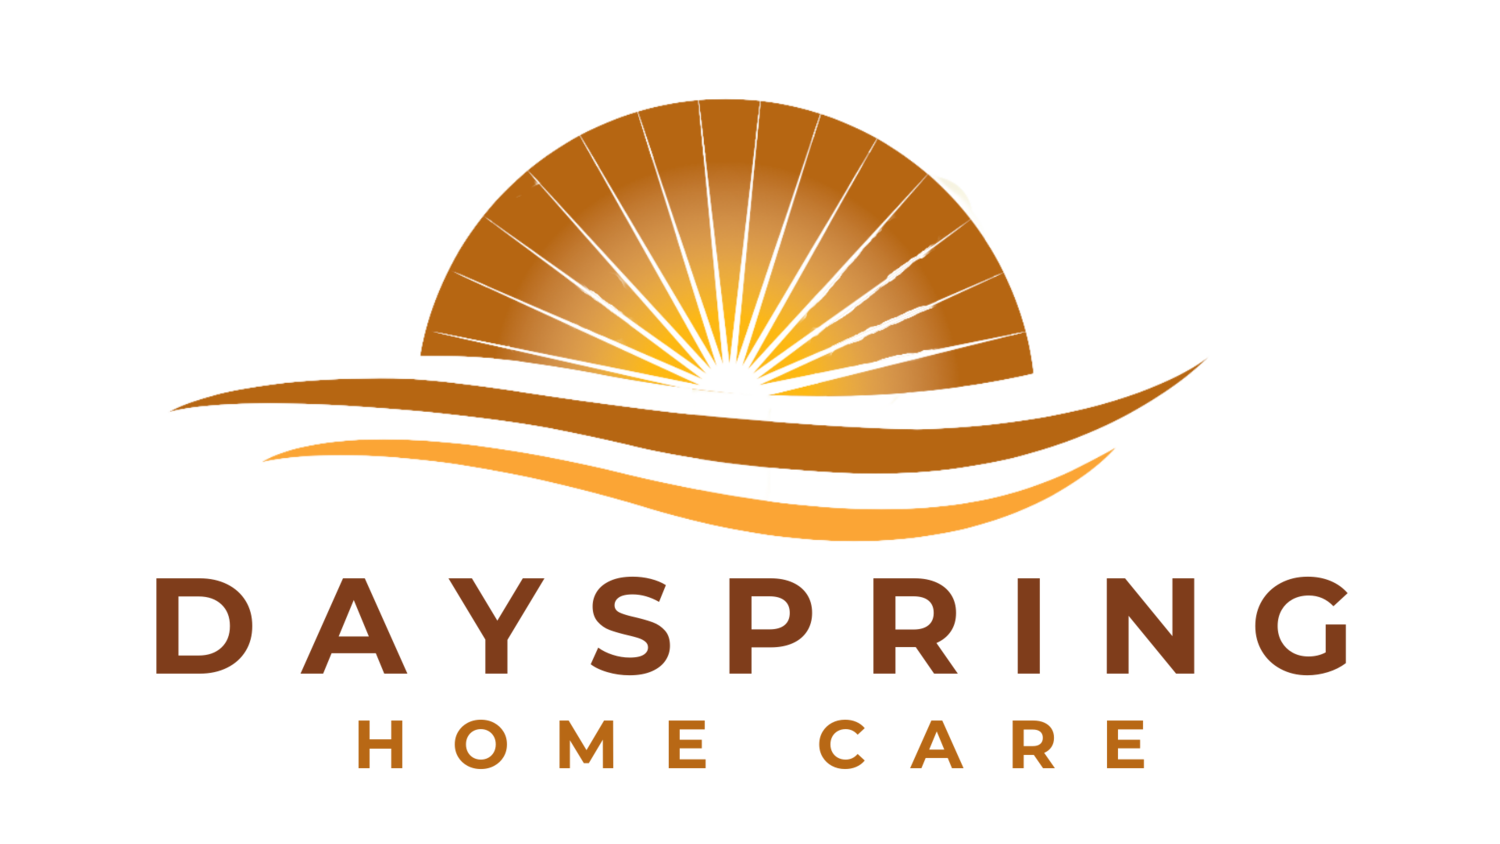 Dayspring Homecare